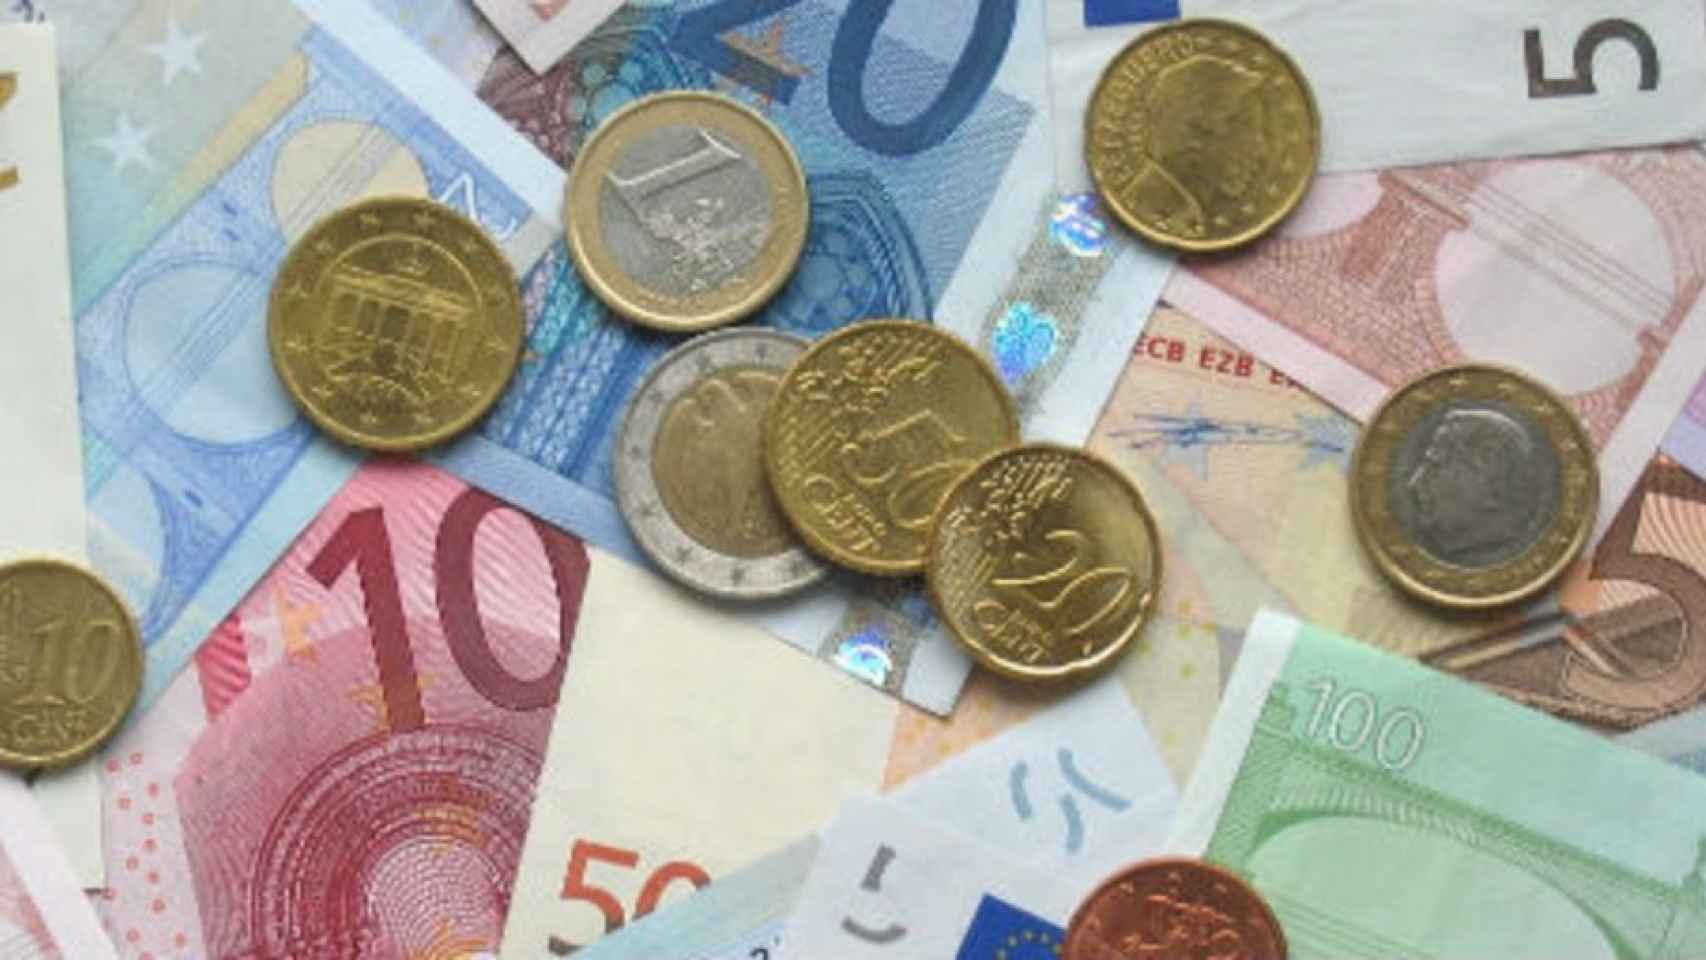 Monedas y billetes de euro de diferente denominación.